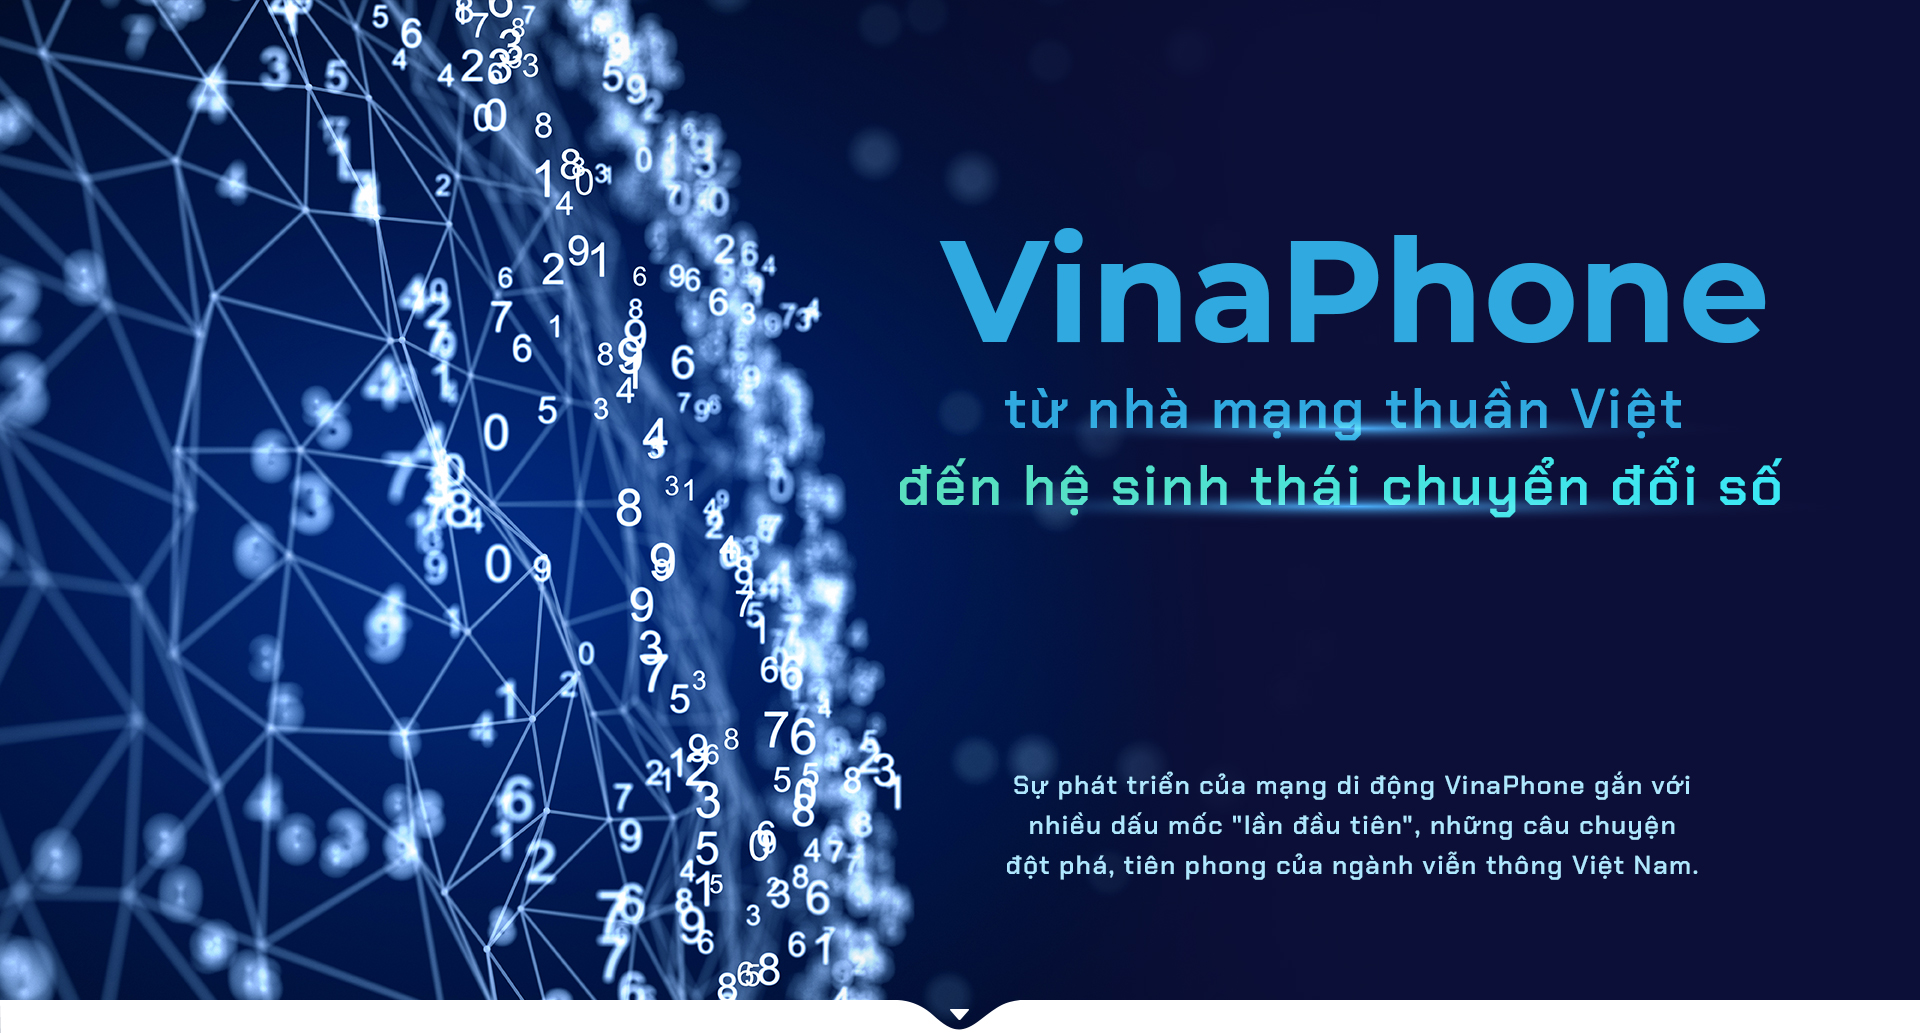 VinaPhone - từ nhà mạng thuần Việt đến hệ sinh thái chuyển đổi số